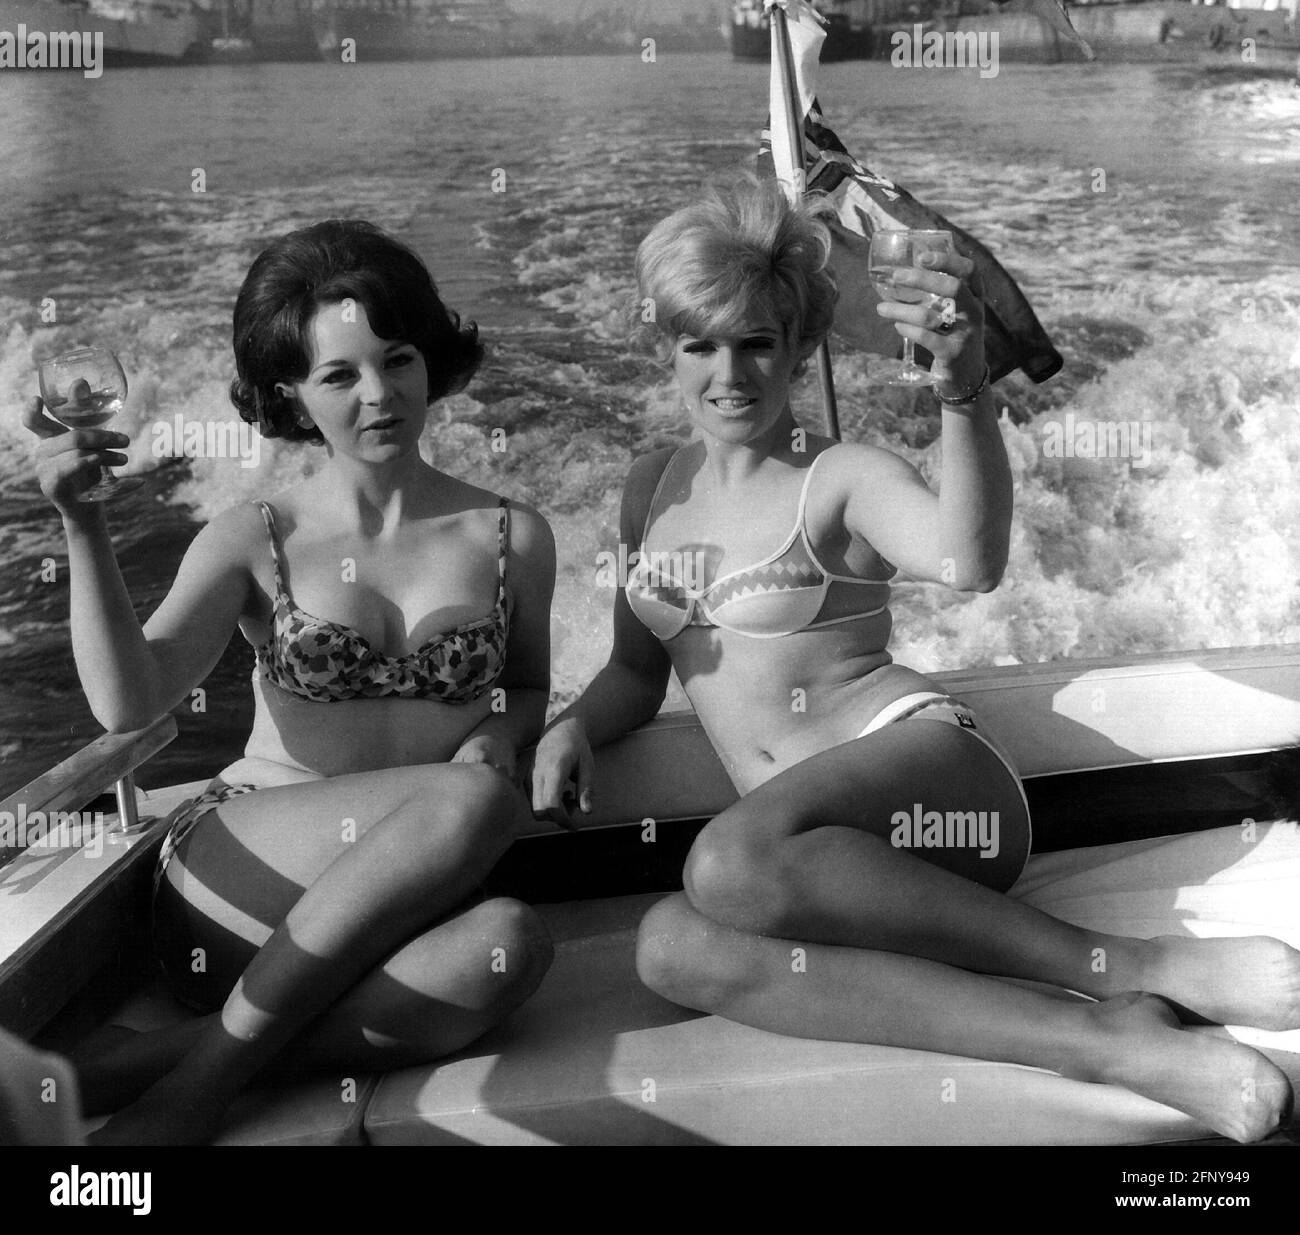 Personen, Frauen, zwei Frauen mit Bikini und Weingläsern auf dem Motorboot, 1968, ZUSÄTZLICHE-RIGHTS-CLEARANCE-INFO-NOT-AVAILABLE Stockfoto